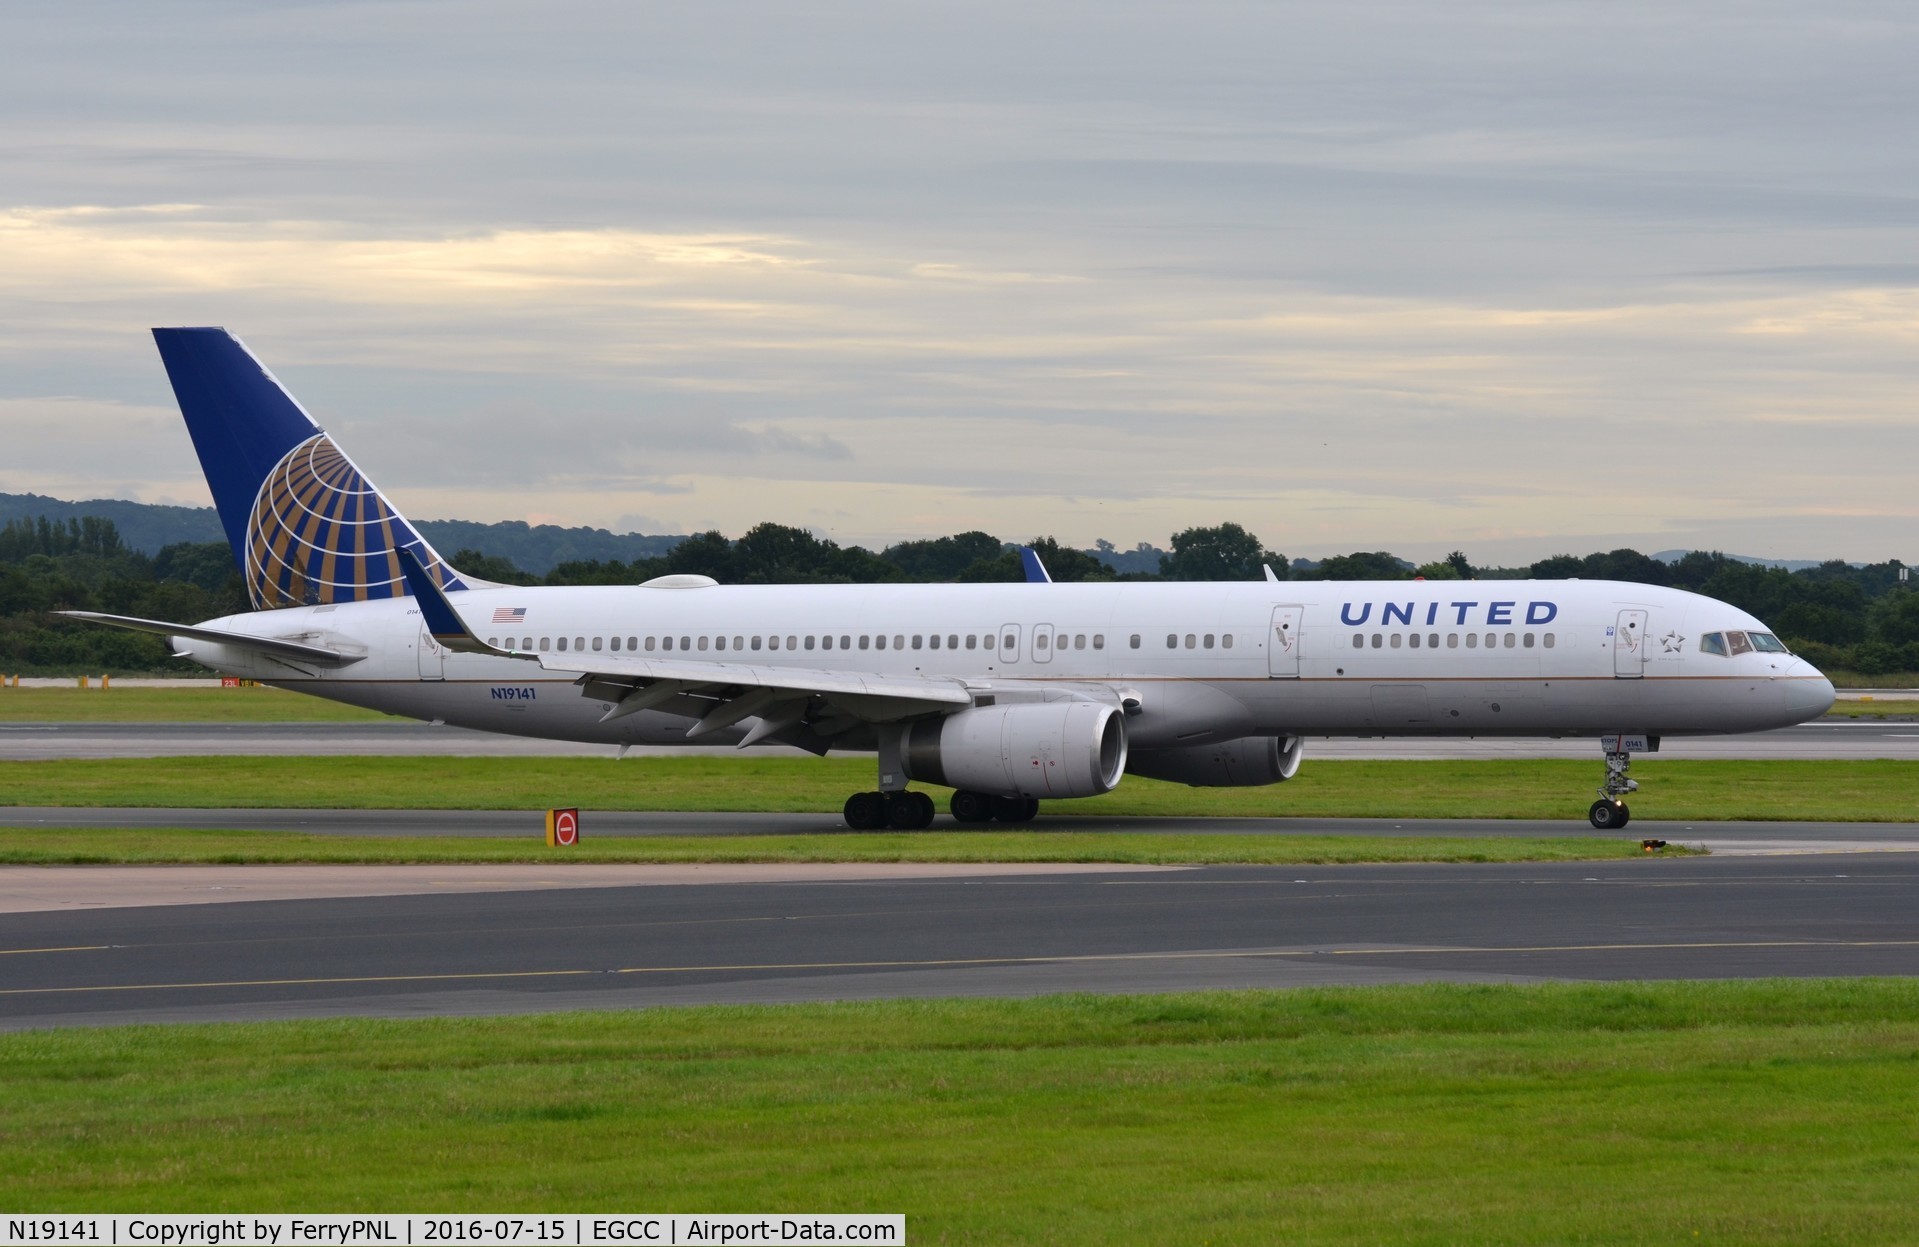 N19141, 2000 Boeing 757-224 C/N 30354, United B752 vacates the runway in MAN